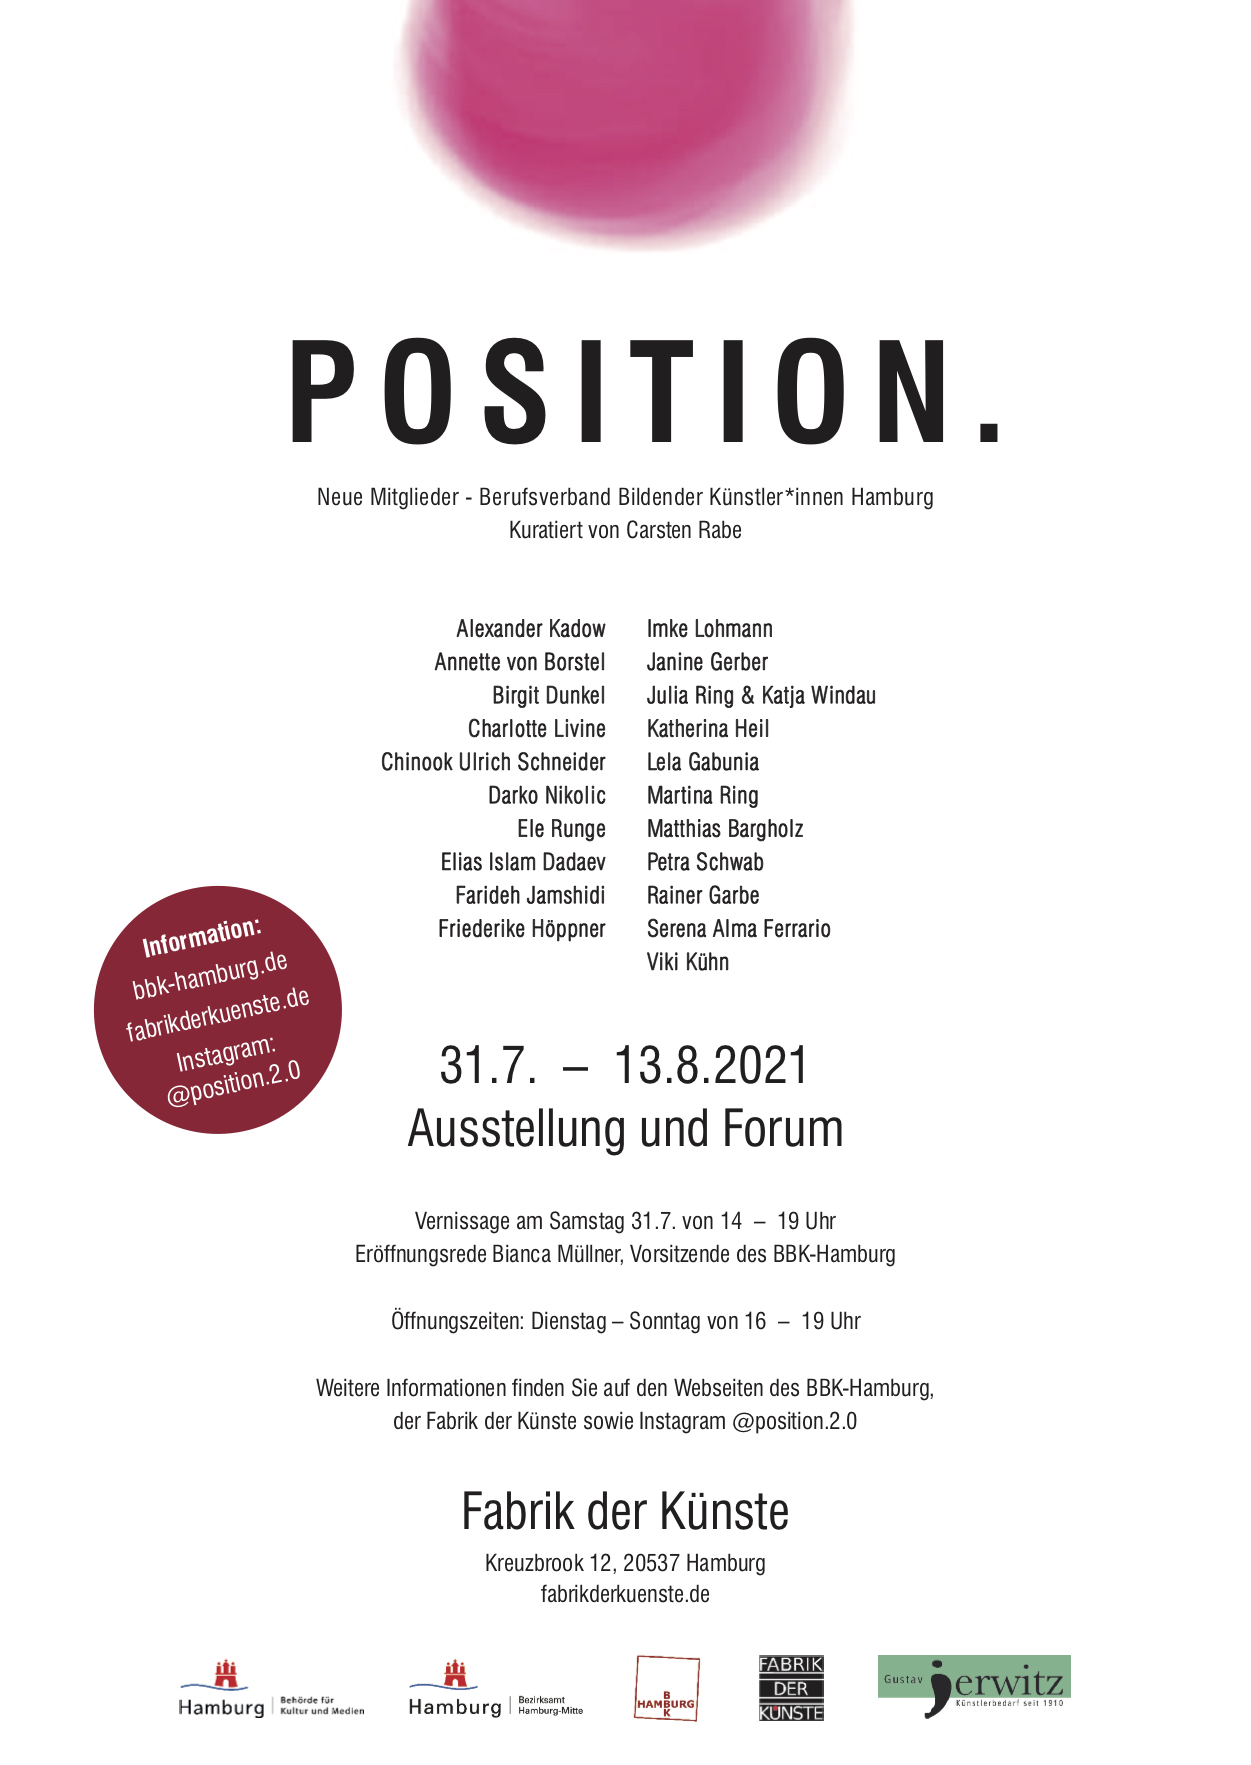 position 2.0 bbk hamburg berufsverband bildender künstler exhibition ausstellung